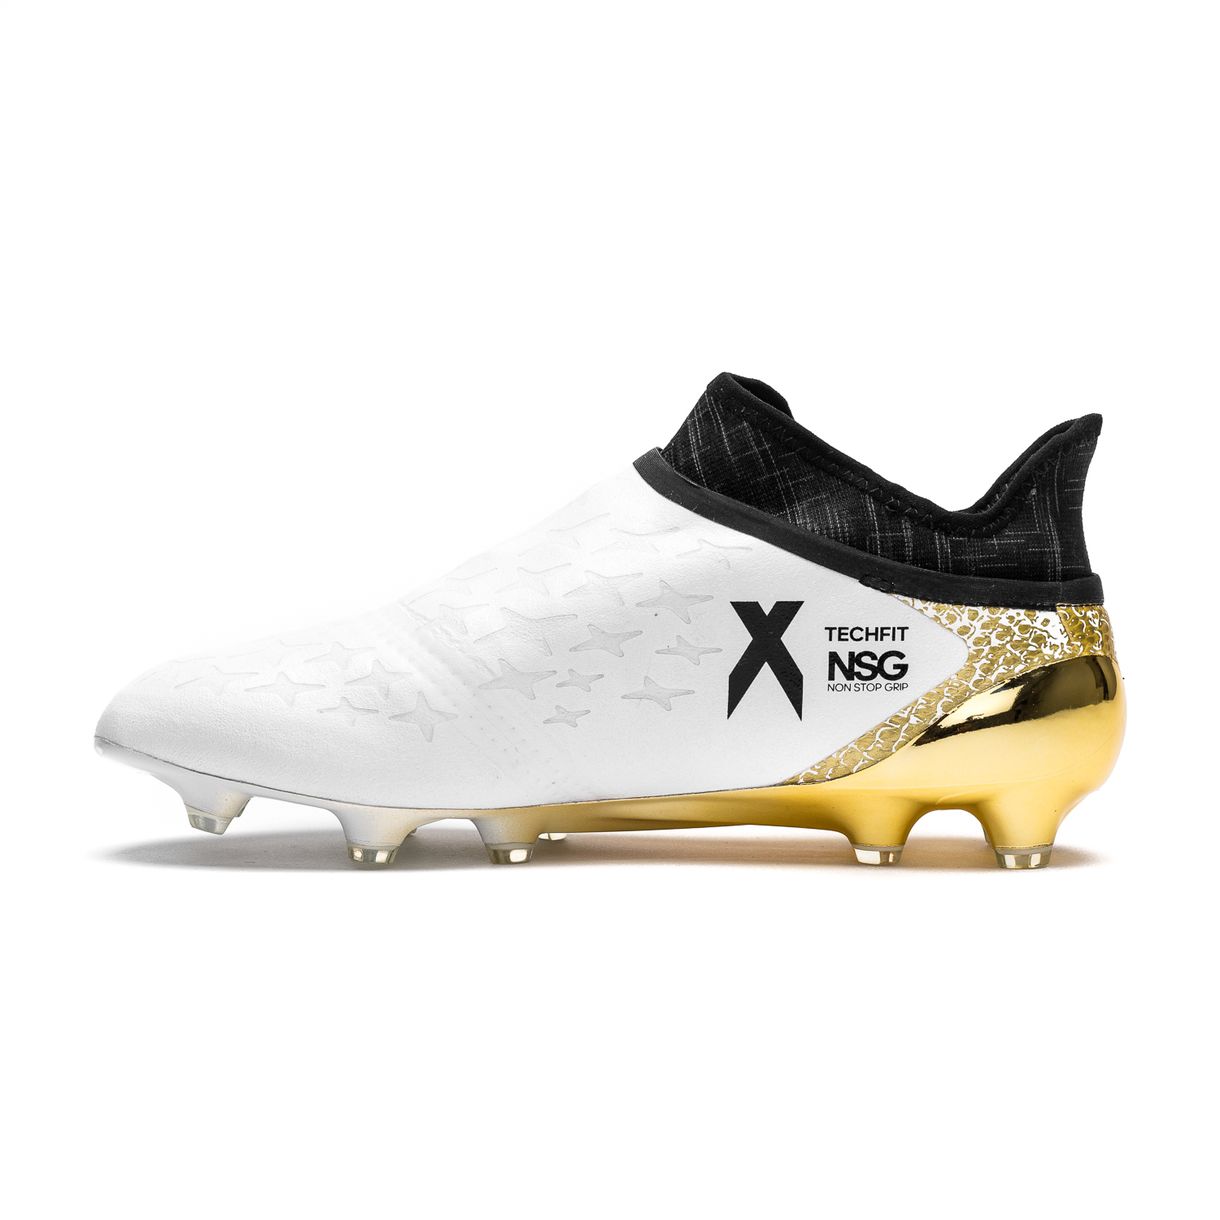 Regulación inteligencia predicción Adidas X 16+ PureChaos FG/AG - Stellar Pack - White / Core Black / Gold  Metallic - Football Shirt Culture - Latest Football Kit News and More